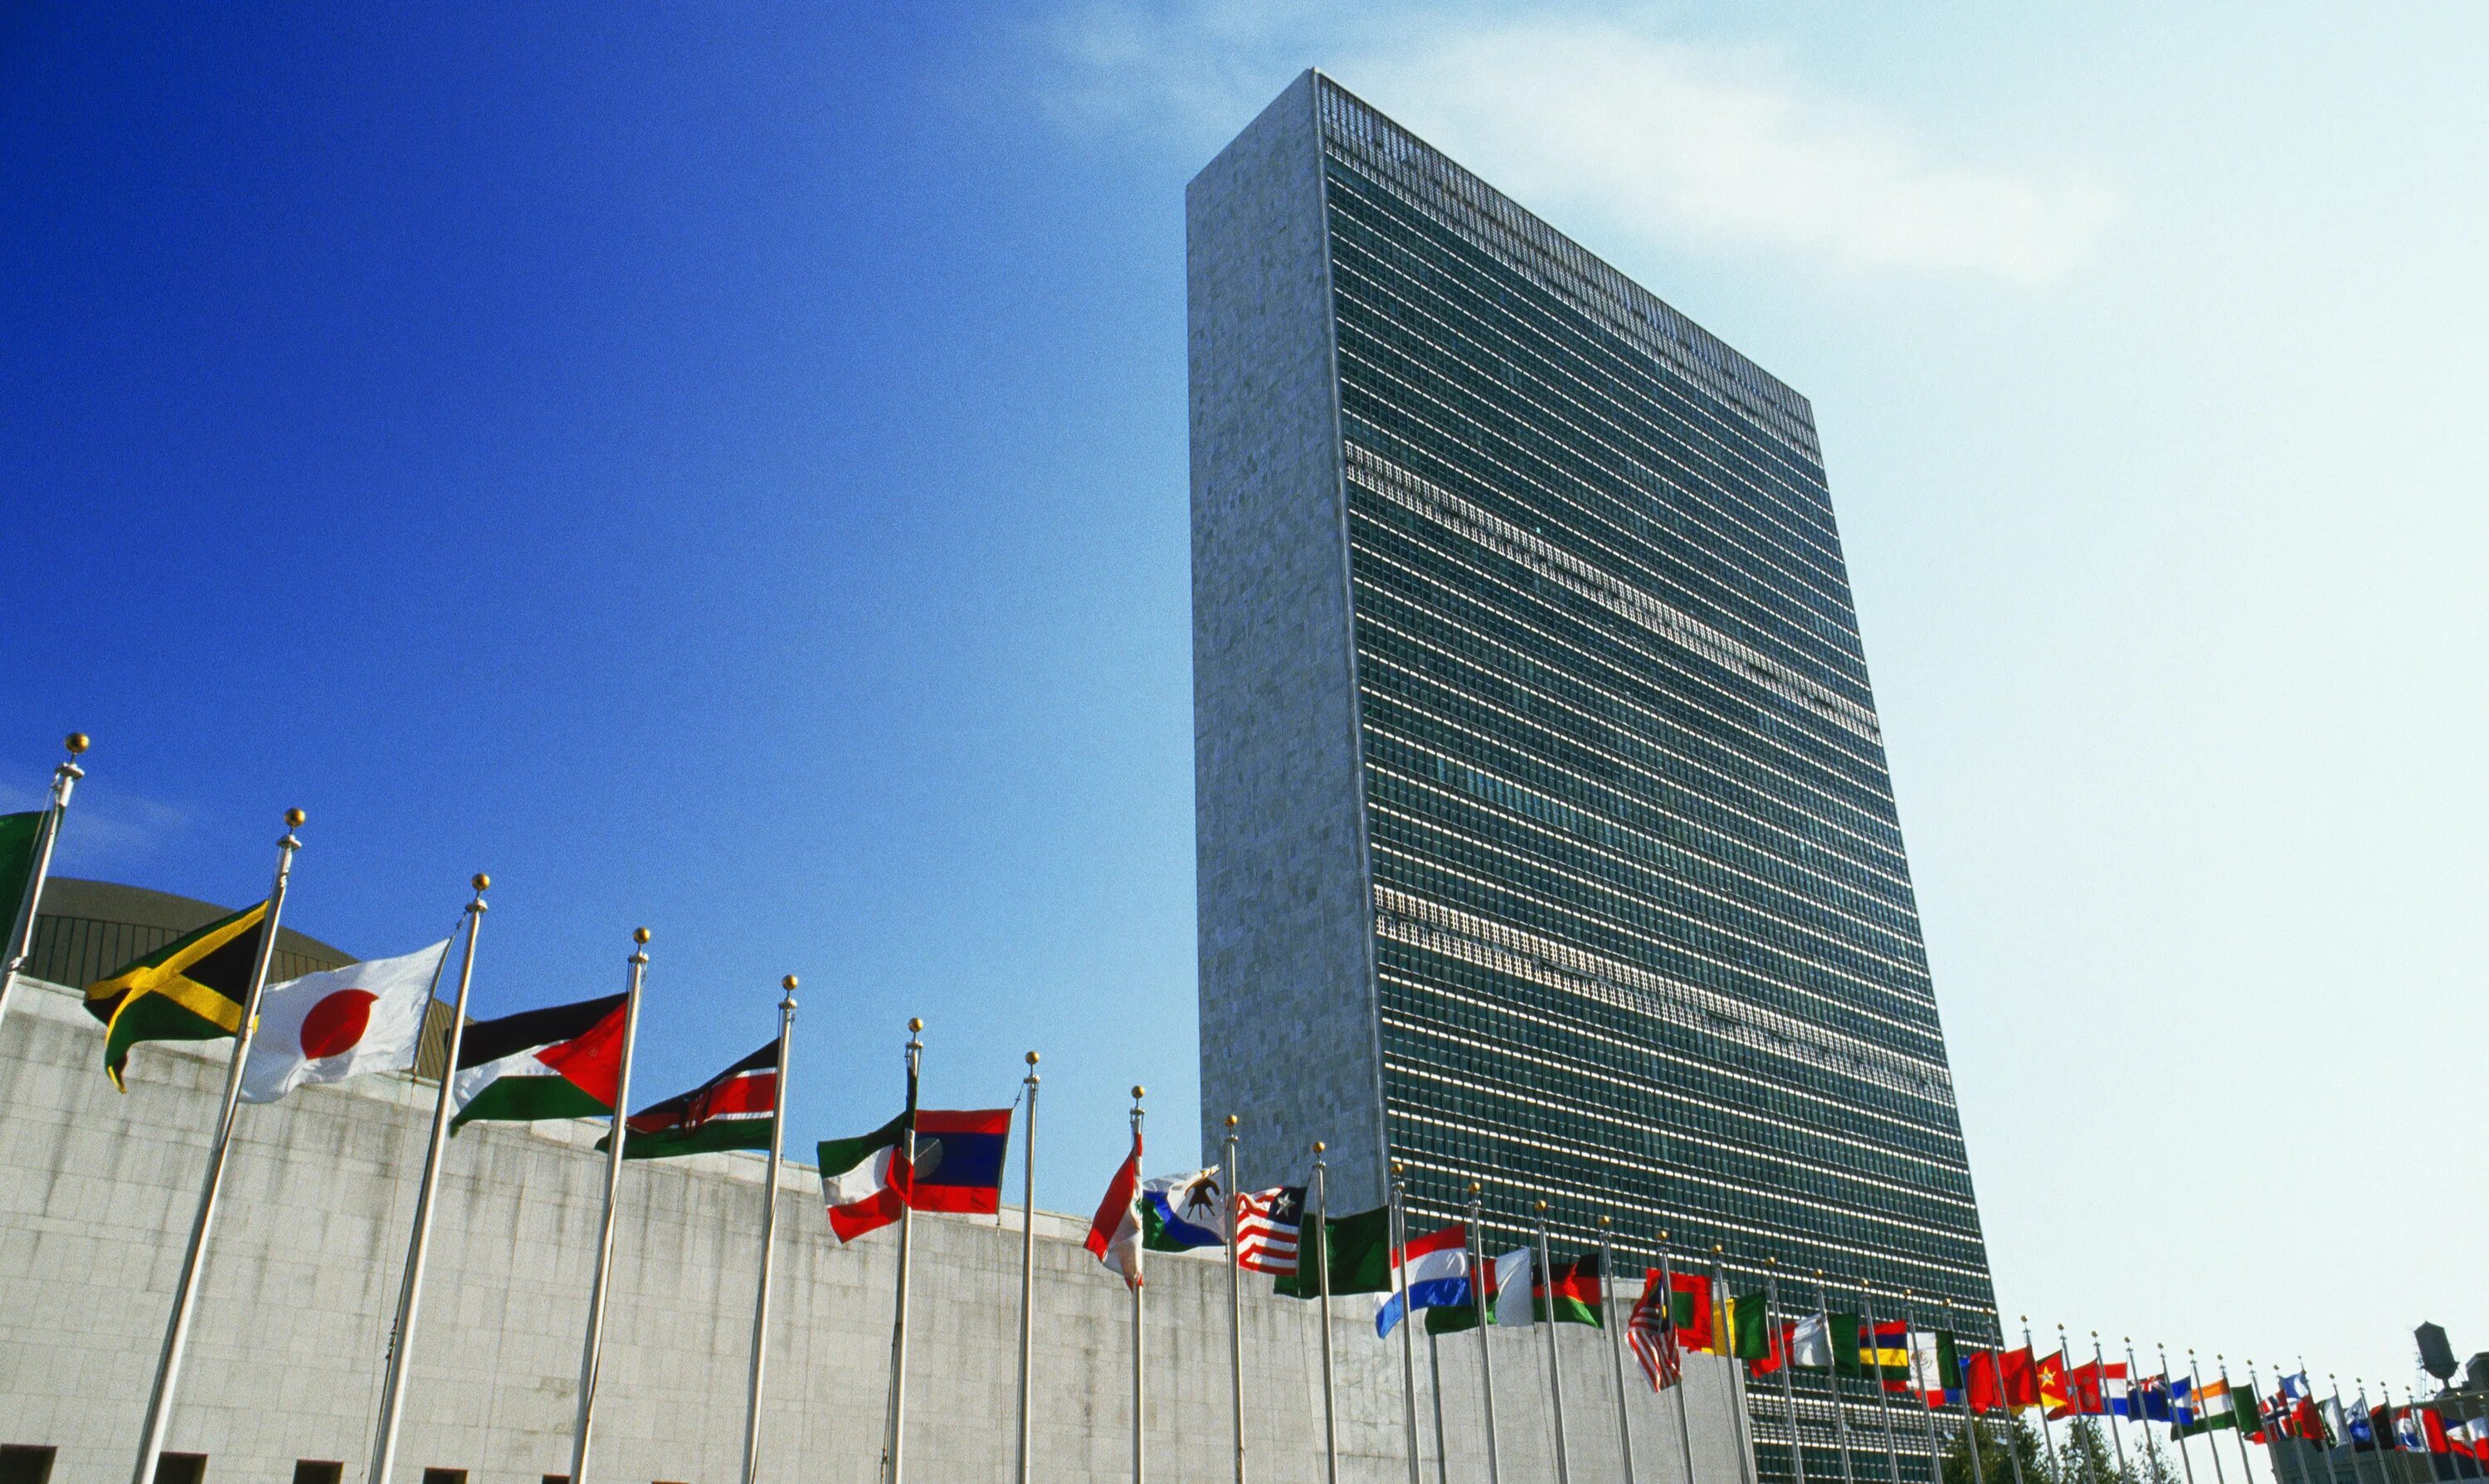 Штаб-квартира ООН В Нью-Йорке. Здание ООН В Нью-Йорке. Здание Генеральной Ассамблеи ООН В Нью-Йорке. Штаб-квартиры организации Объединённых наций в Нью-Йорке.. Организации оон в сша